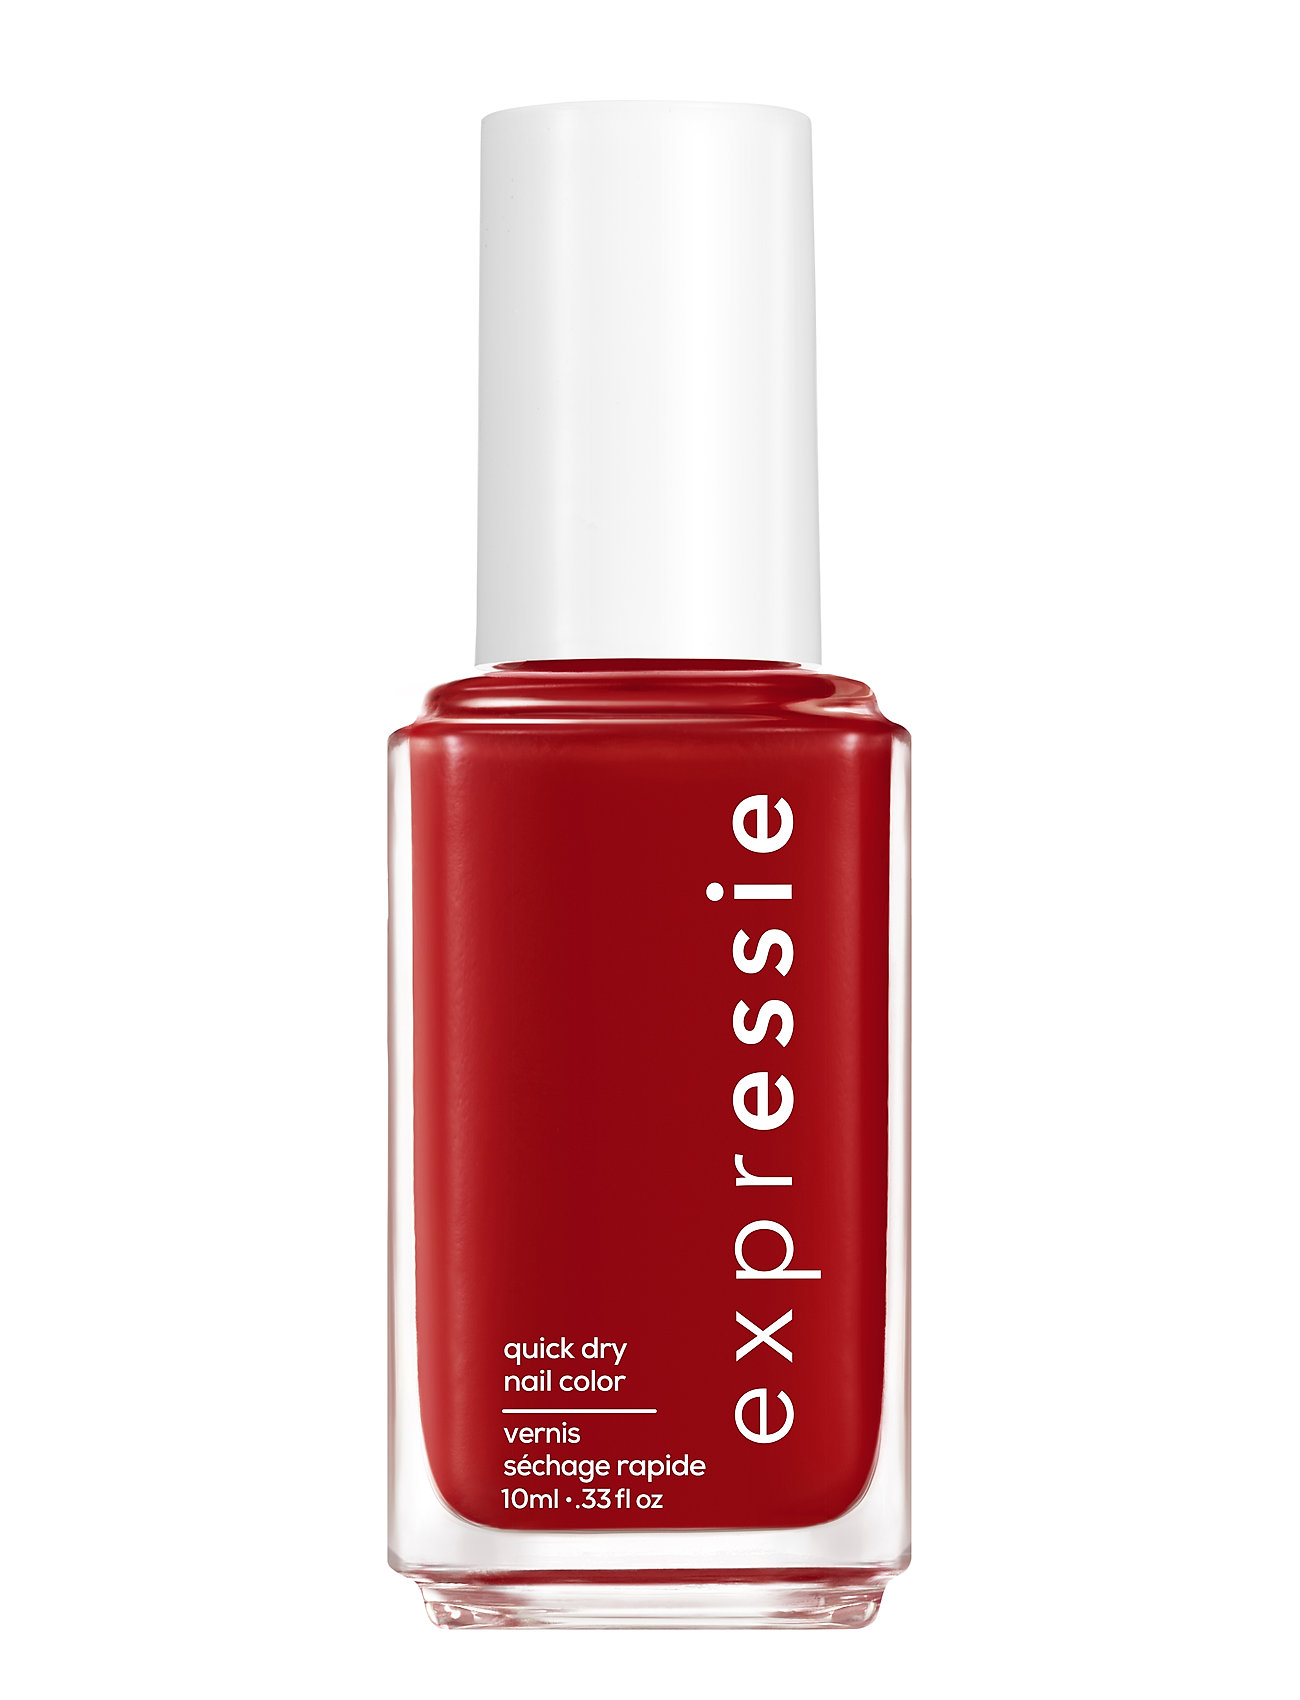 Essie Expressie Seize The Minute 190 Neglelak Makeup Red Essie